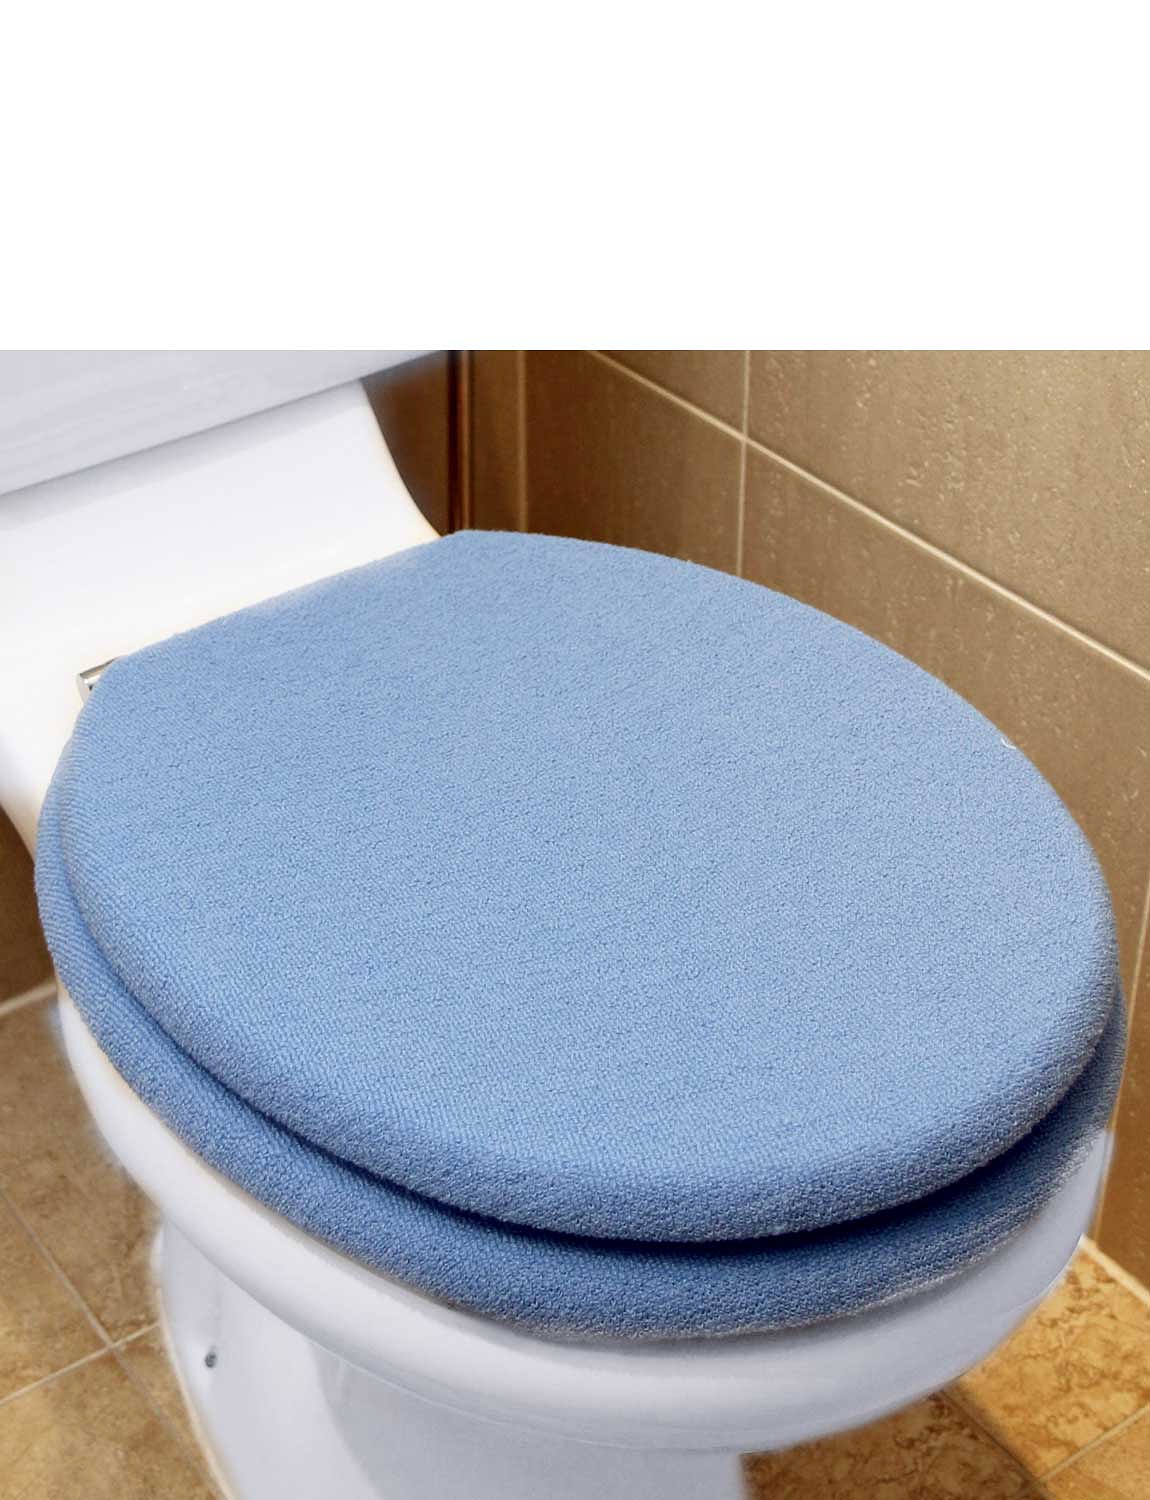 blue toilet lid